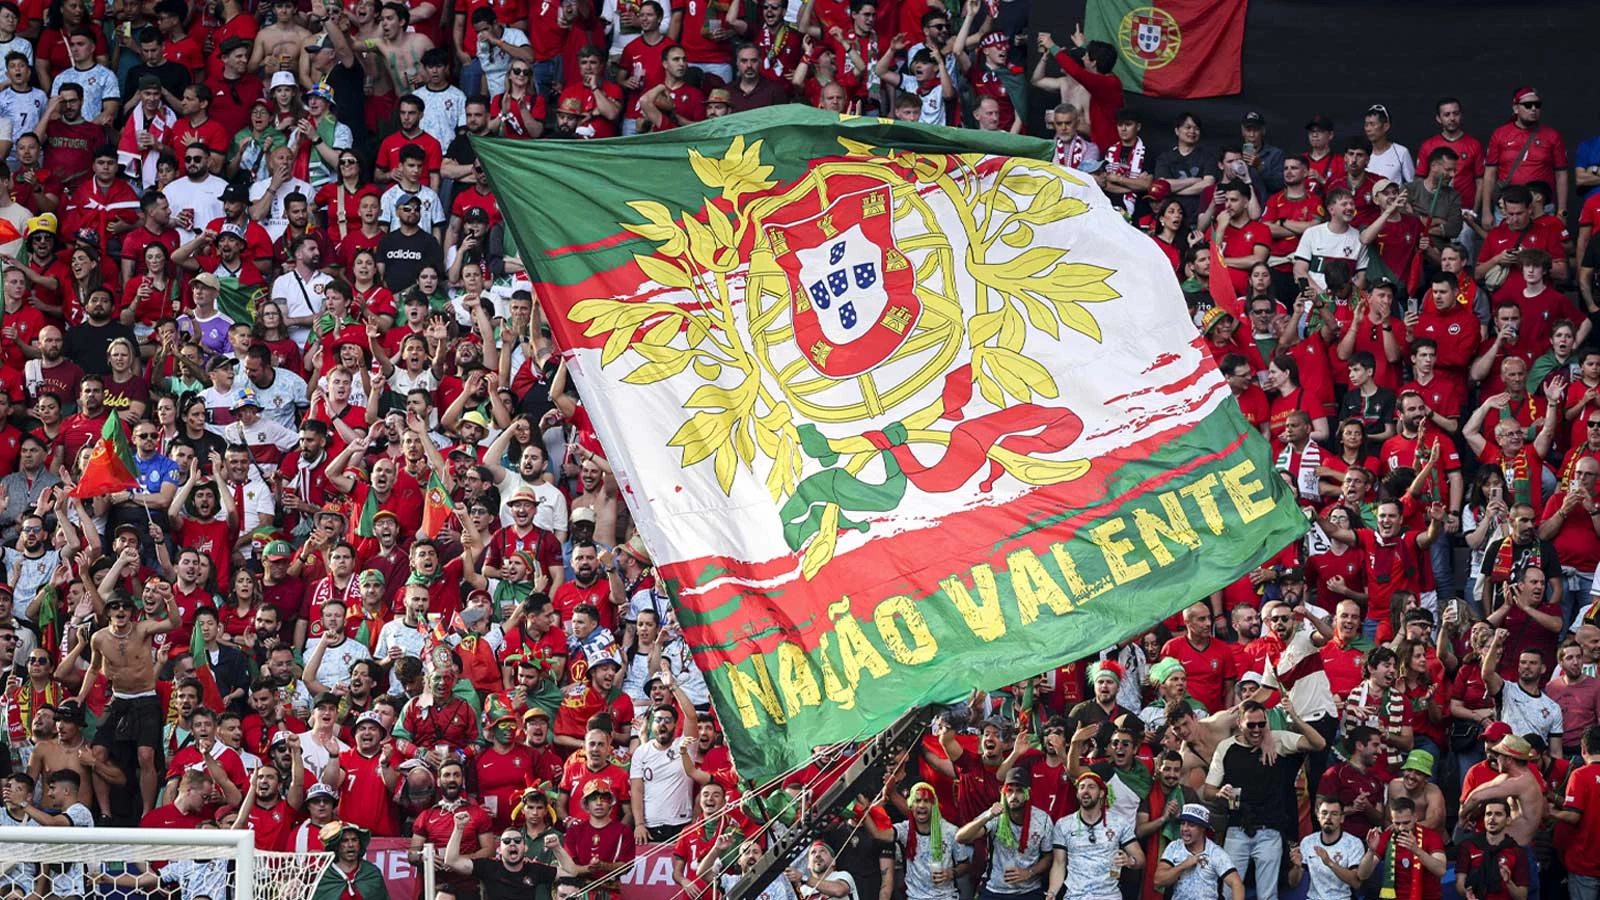 adeptos futebol apoiam seleção portuguesa de futebol